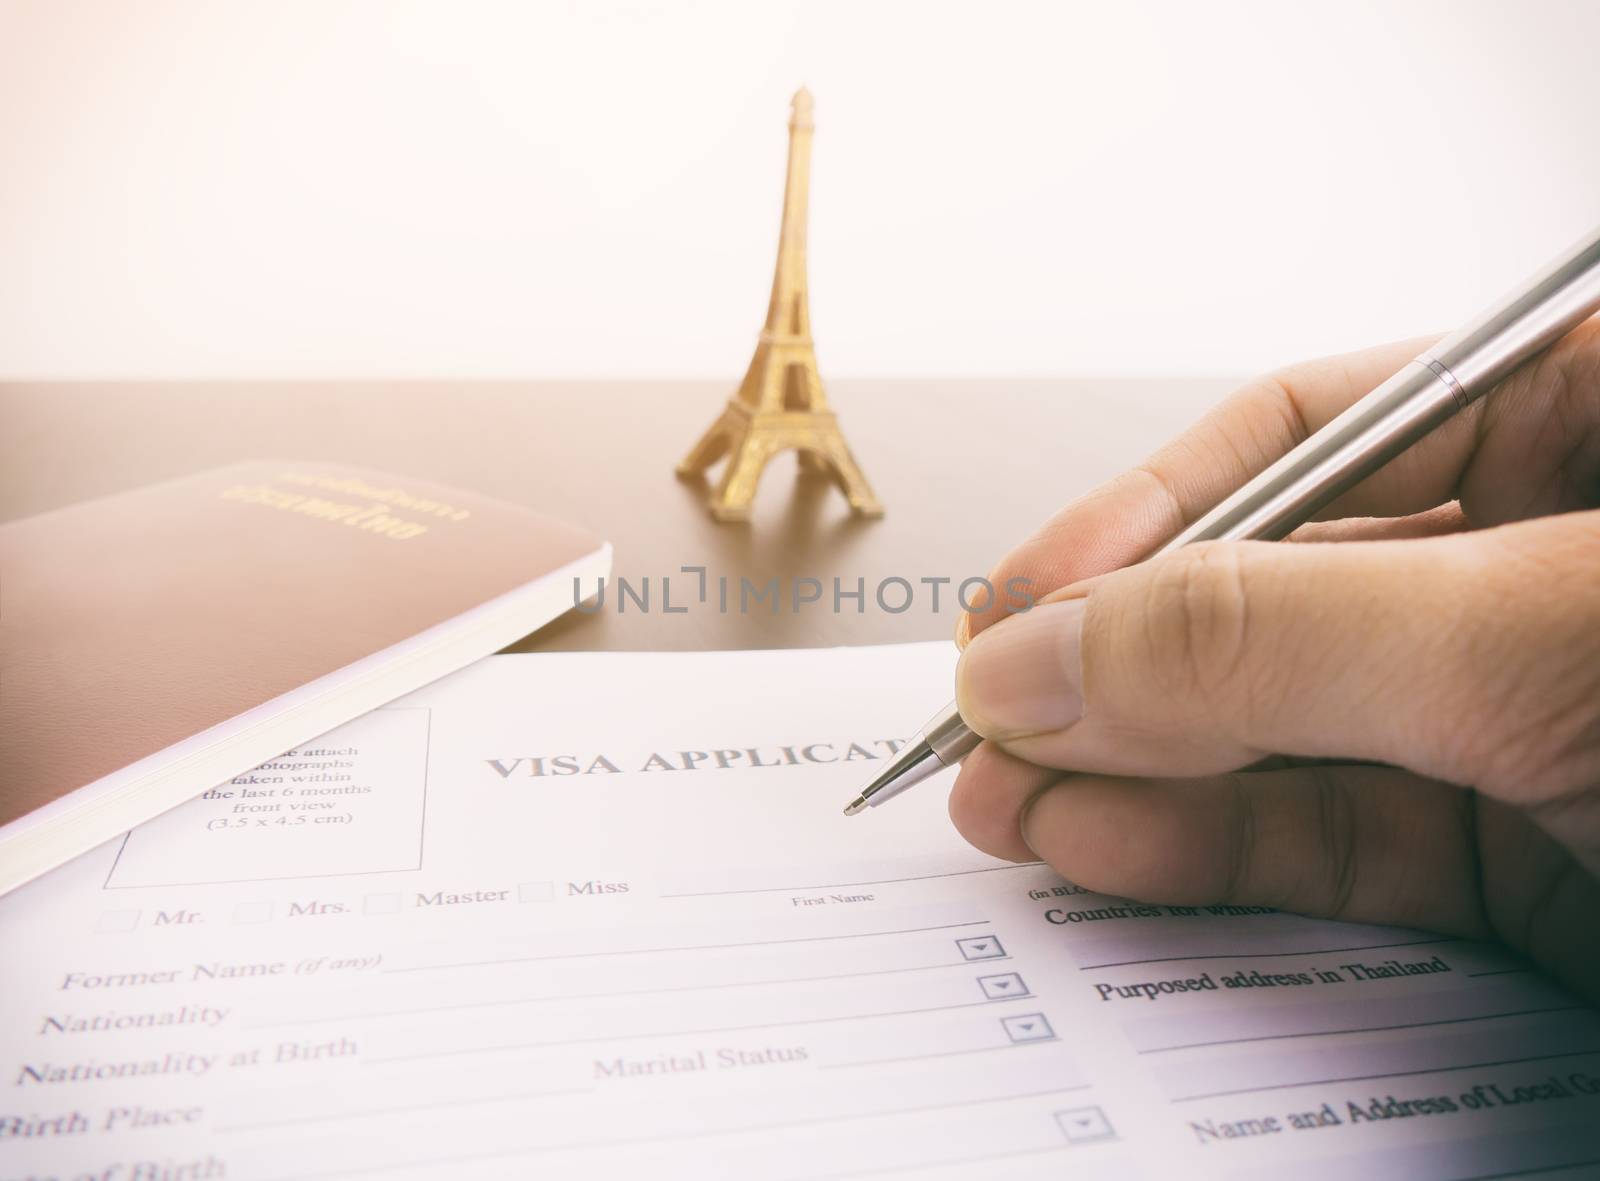 Filling Visa application form for France Paris